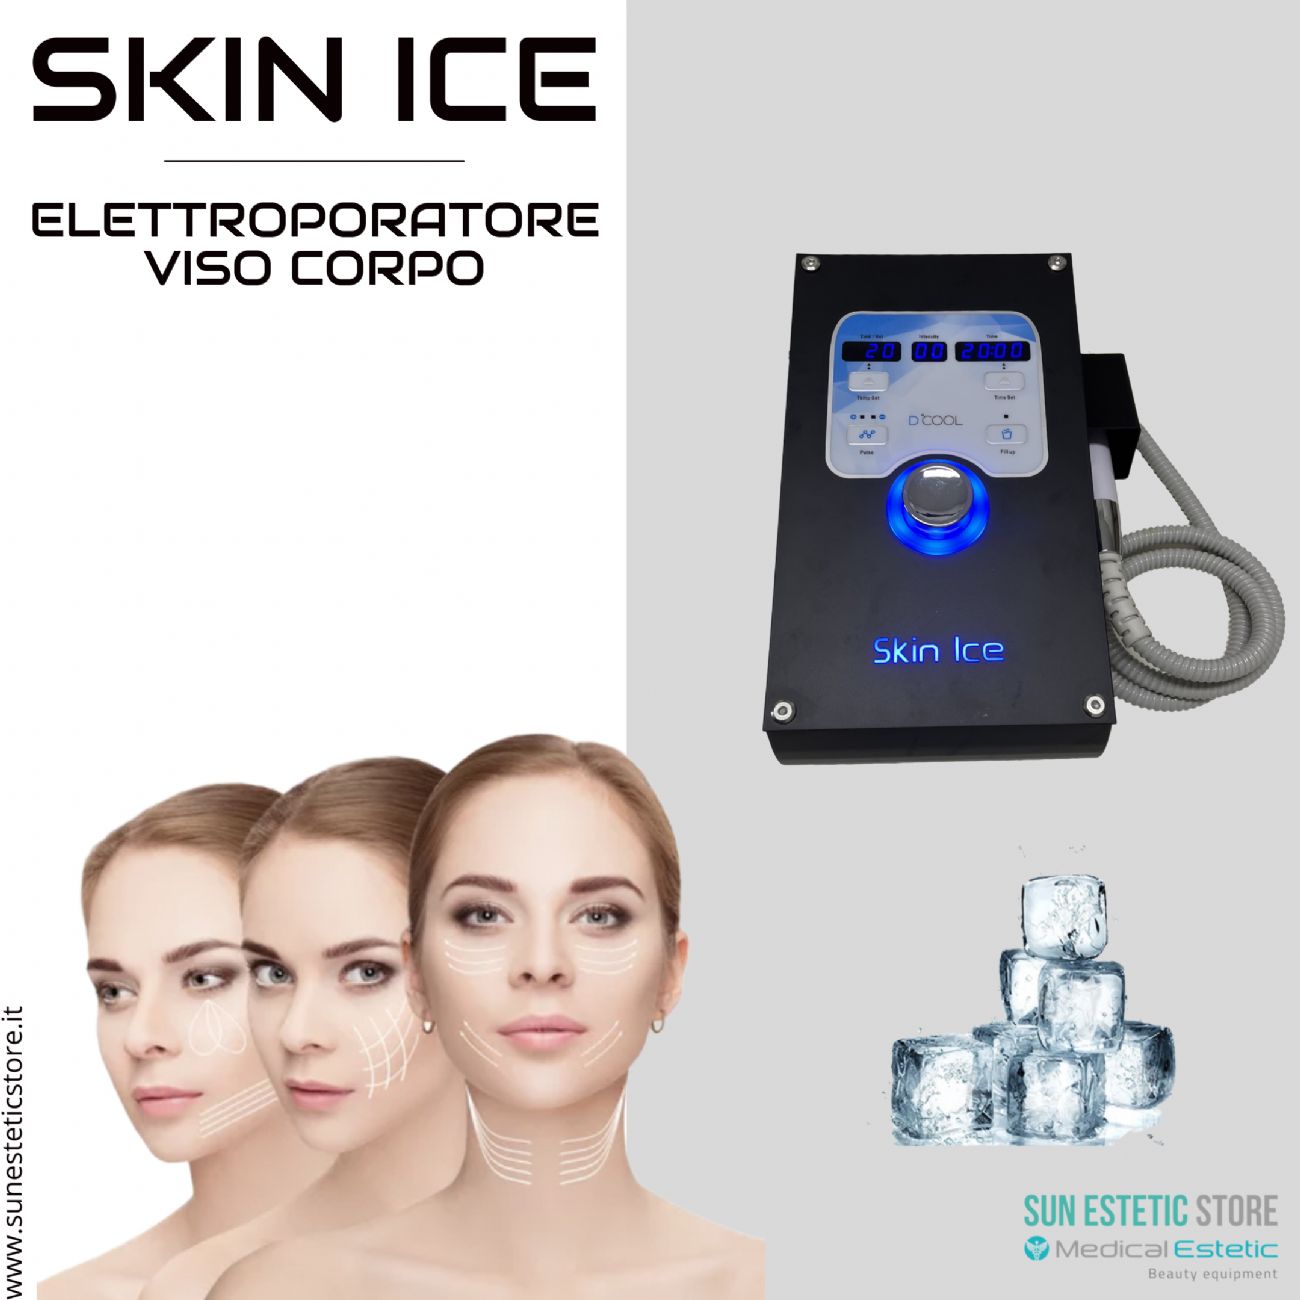 iKhona Skin Ice Elettroporatore viso e corpo per trattamenti estetica